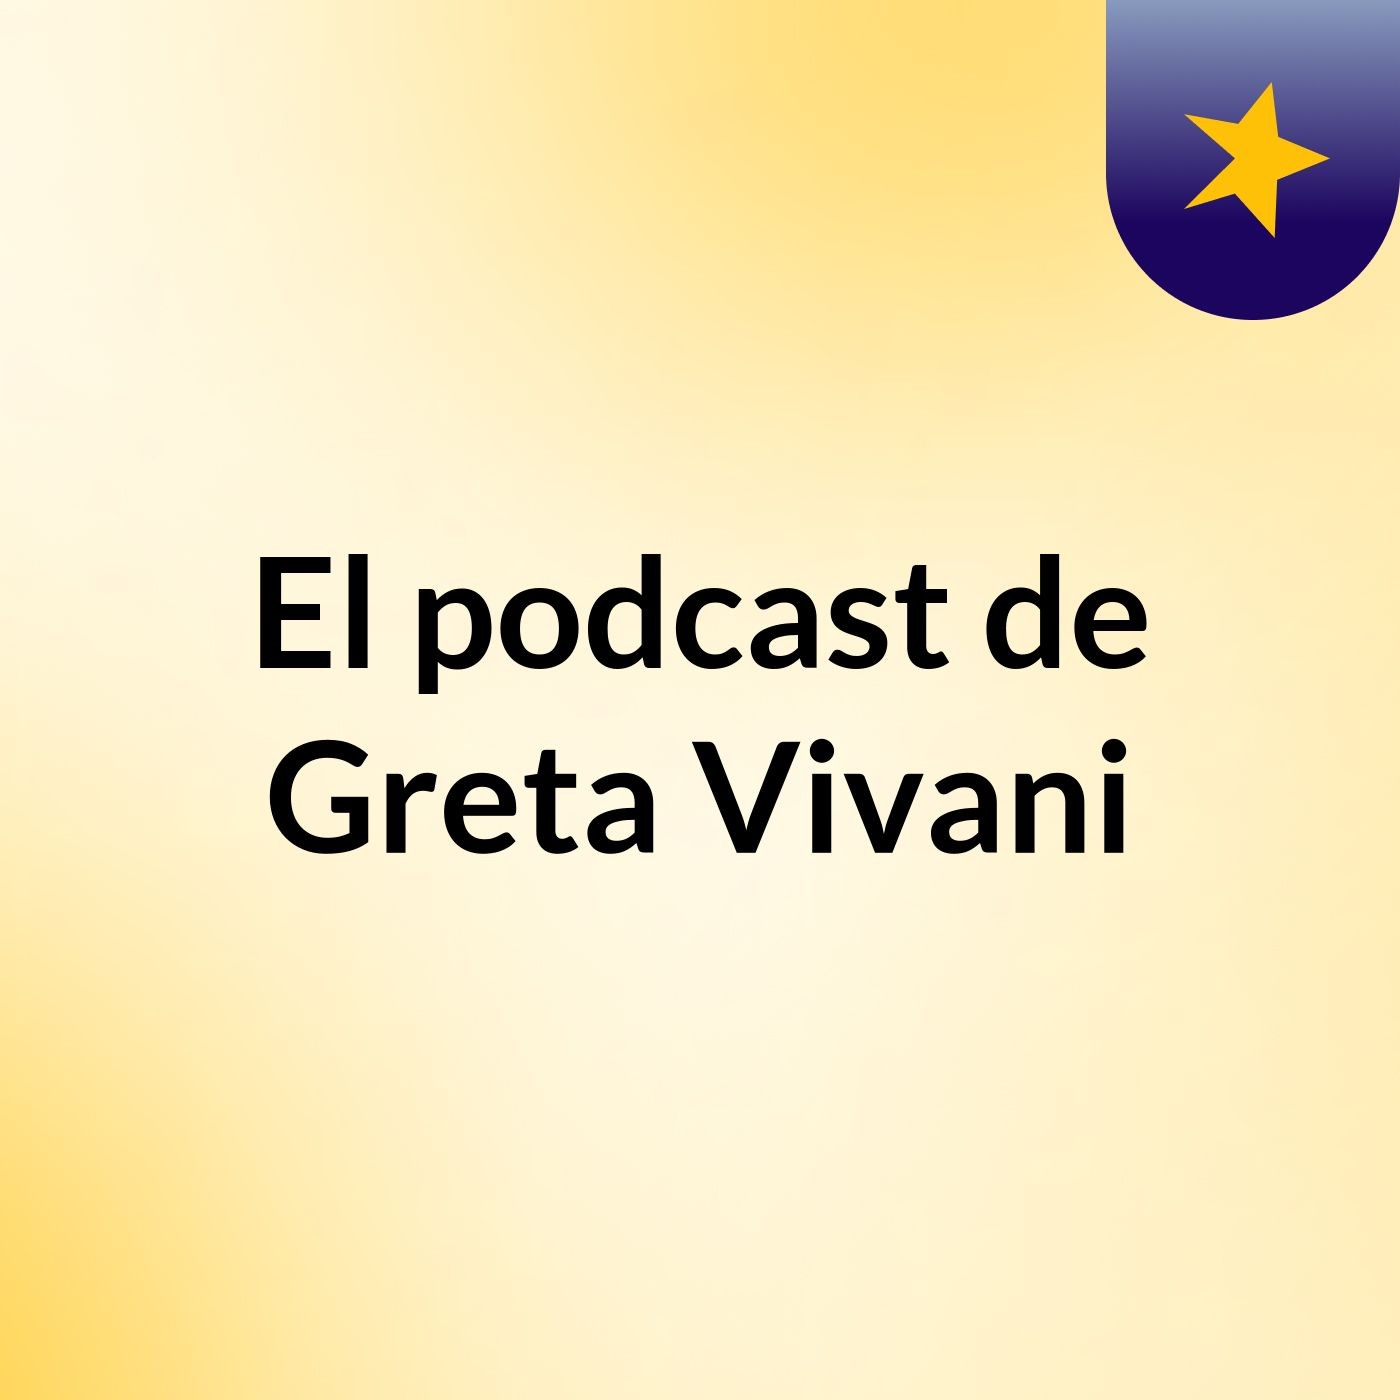 El podcast de Greta Vivani